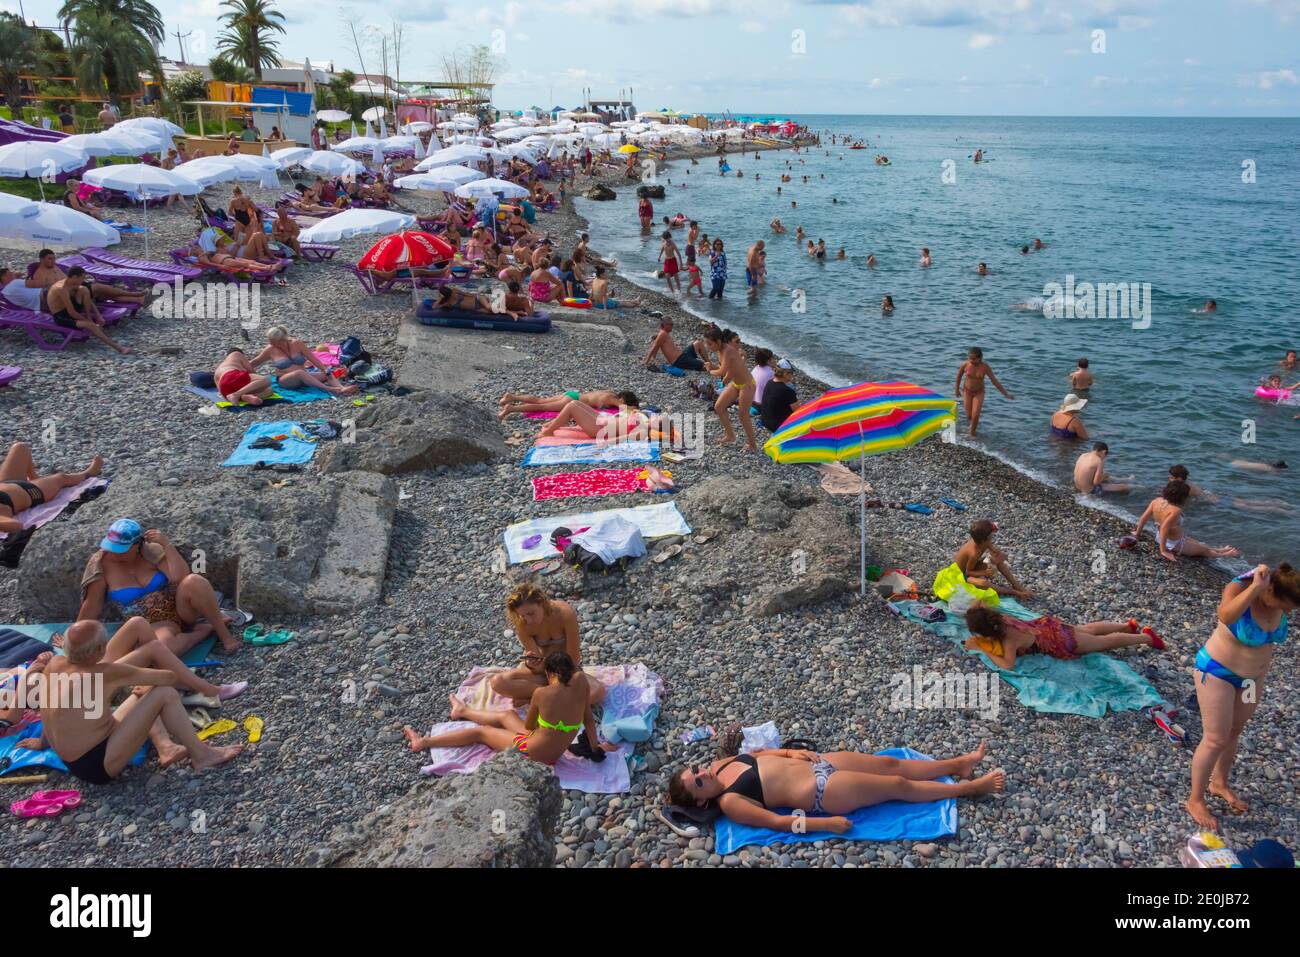 Les gens sur la plage par la mer Caspienne, Batumi, Géorgie Banque D'Images